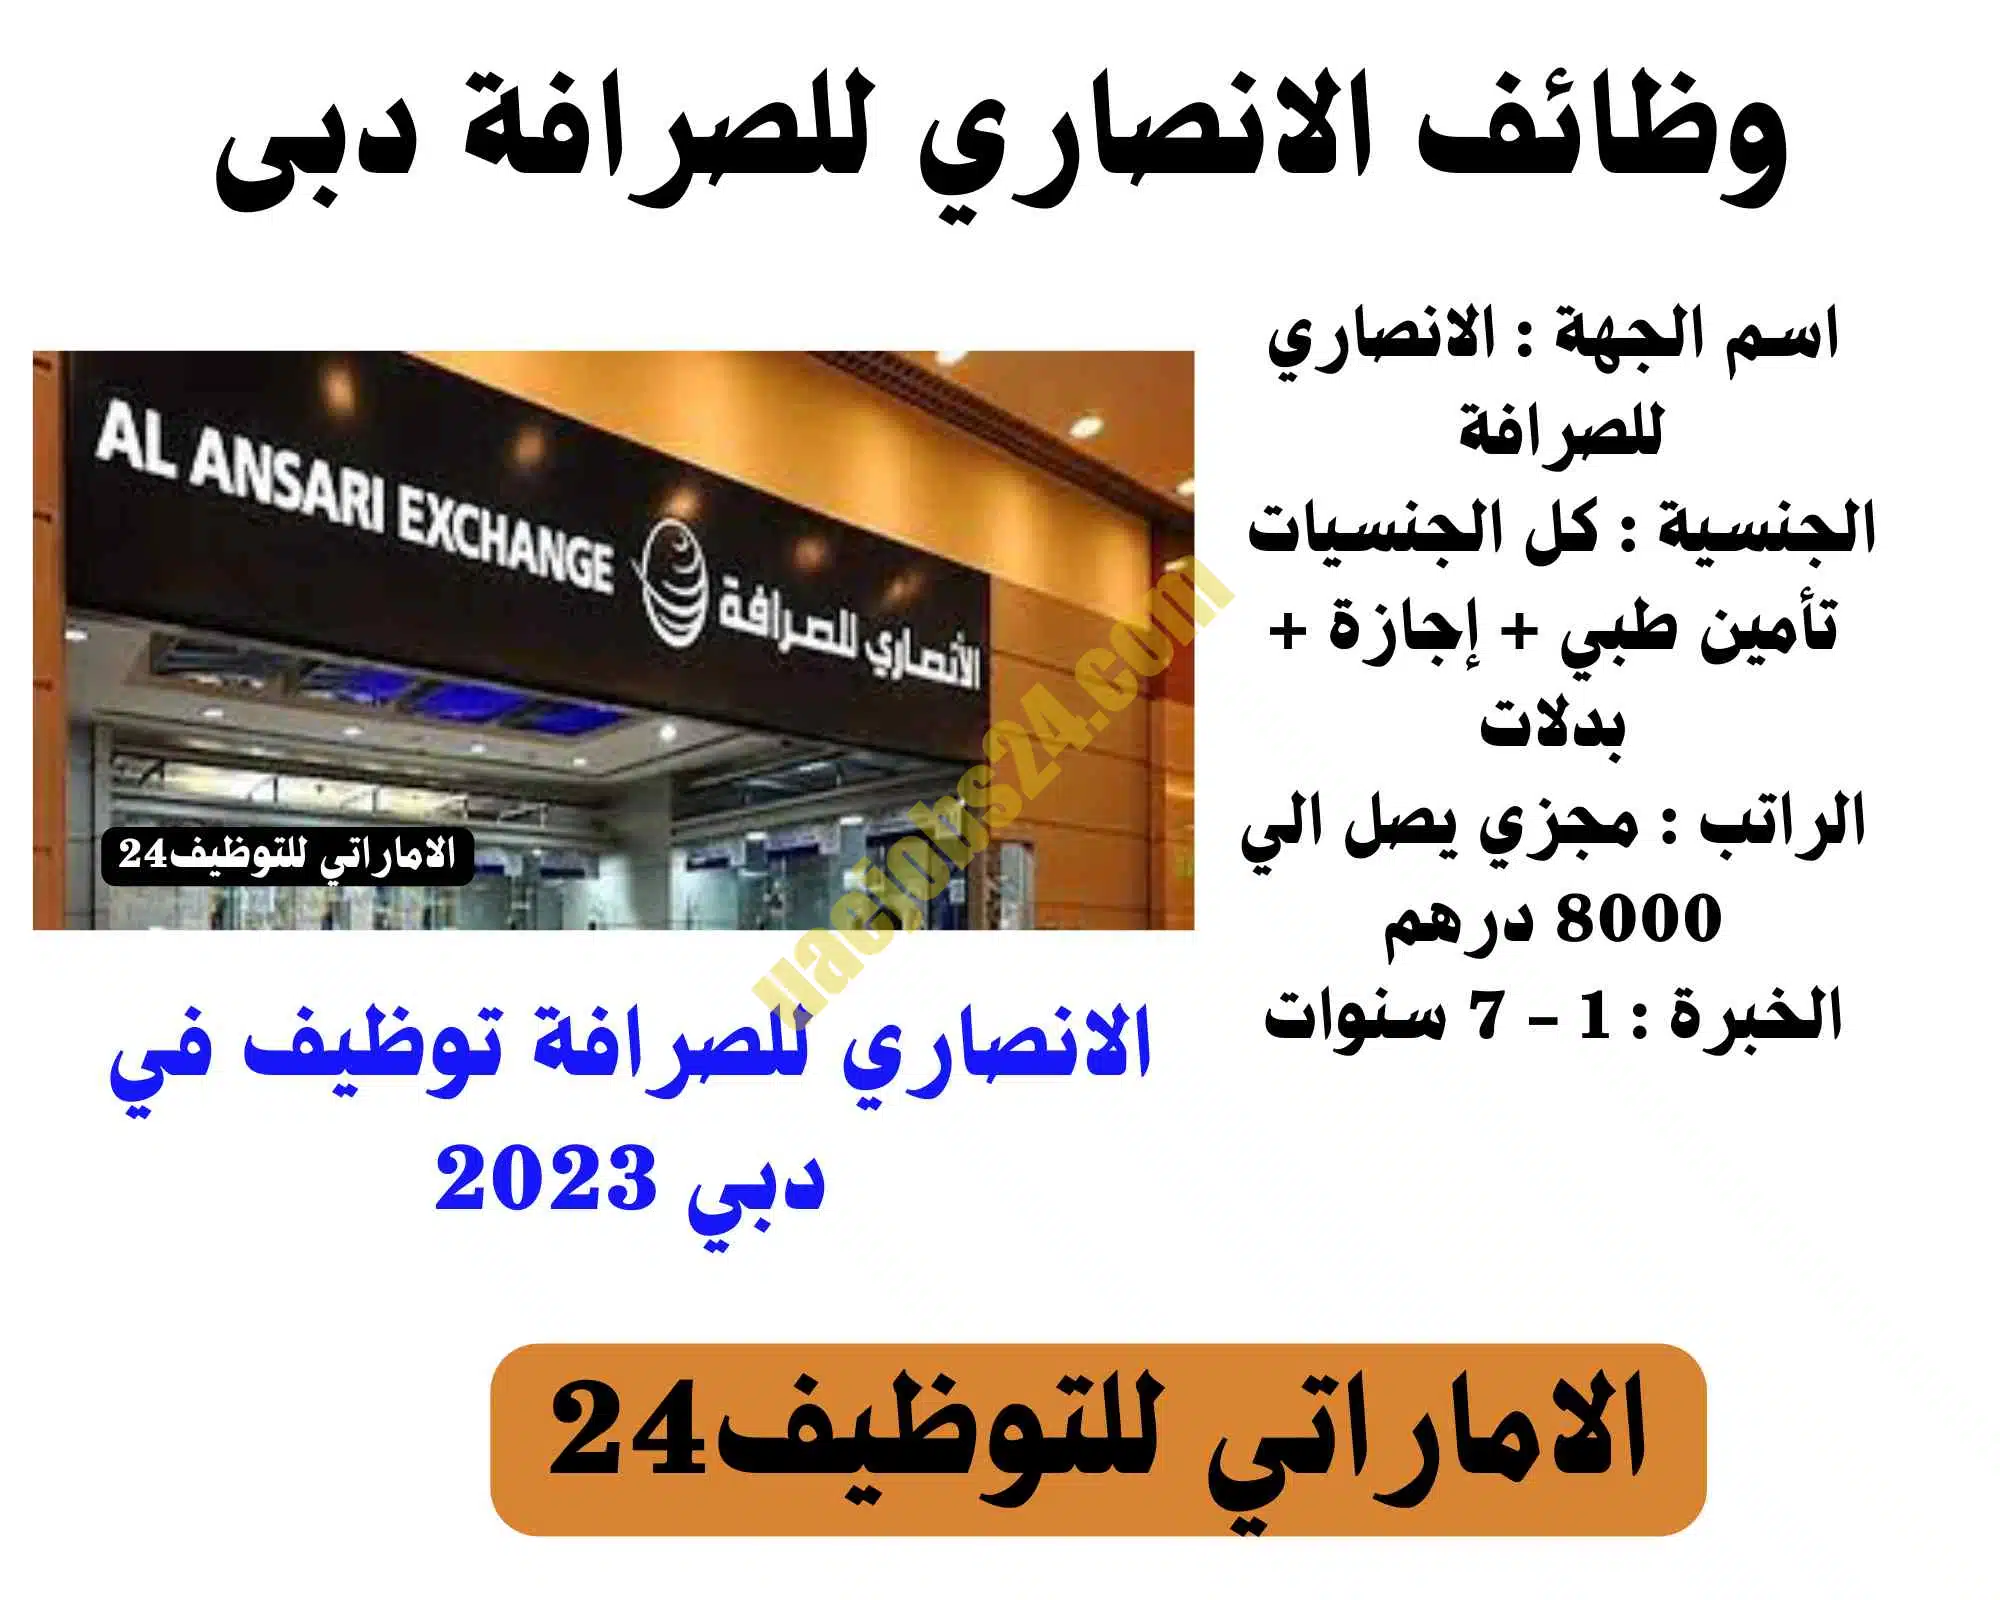 الانصاري للصرافة توظيف في دبي 2023